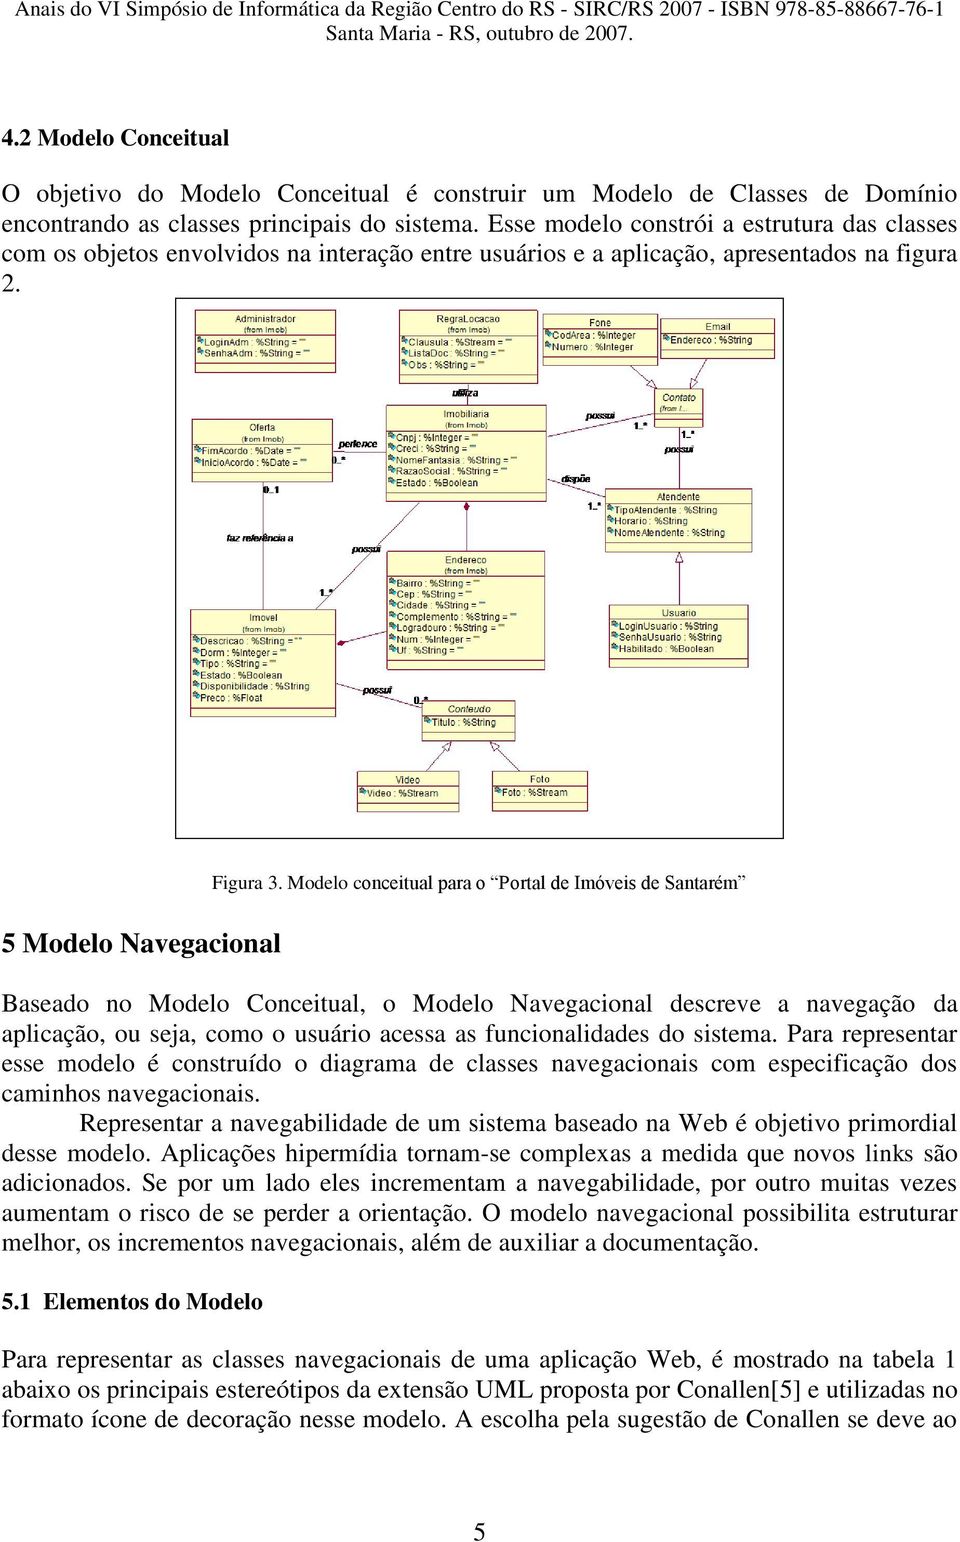 Modelo conceitual para o Portal de Imóveis de Santarém Baseado no Modelo Conceitual, o Modelo Navegacional descreve a navegação da aplicação, ou seja, como o usuário acessa as funcionalidades do